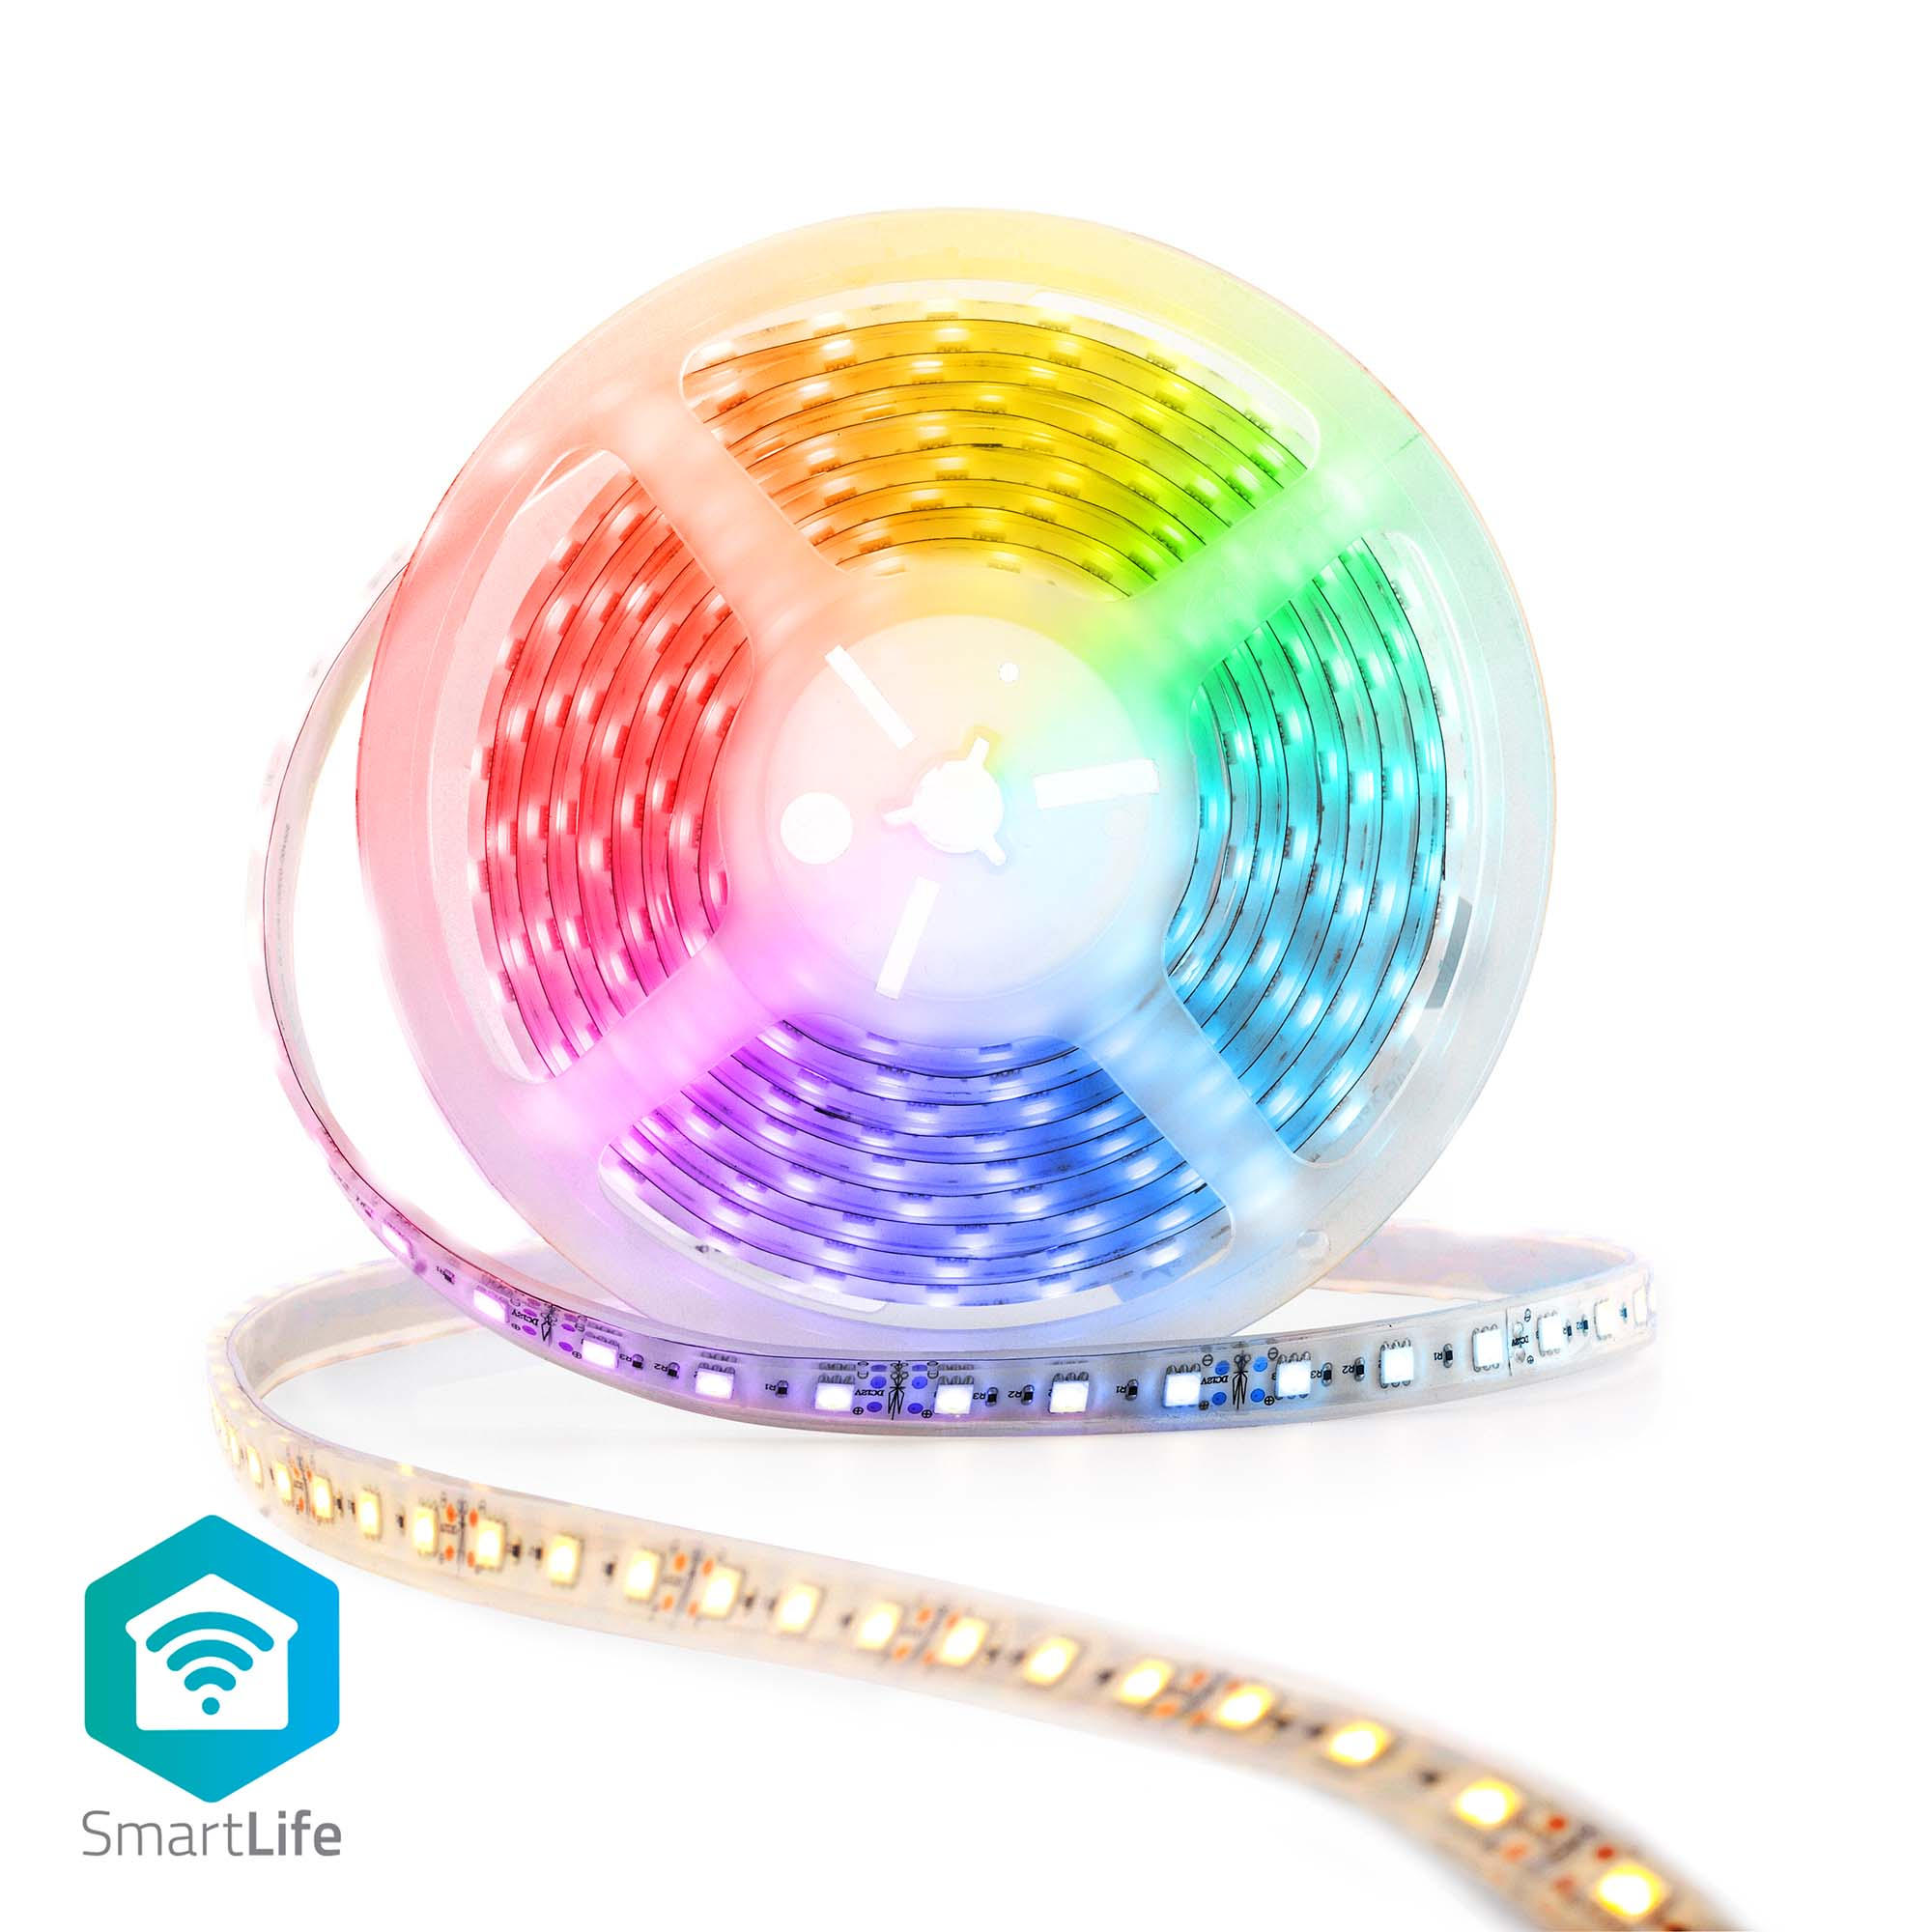 LED-STRIP 500 cm  - Weiß, Basics, Kunststoff (500cm) - Nedis SmartLife